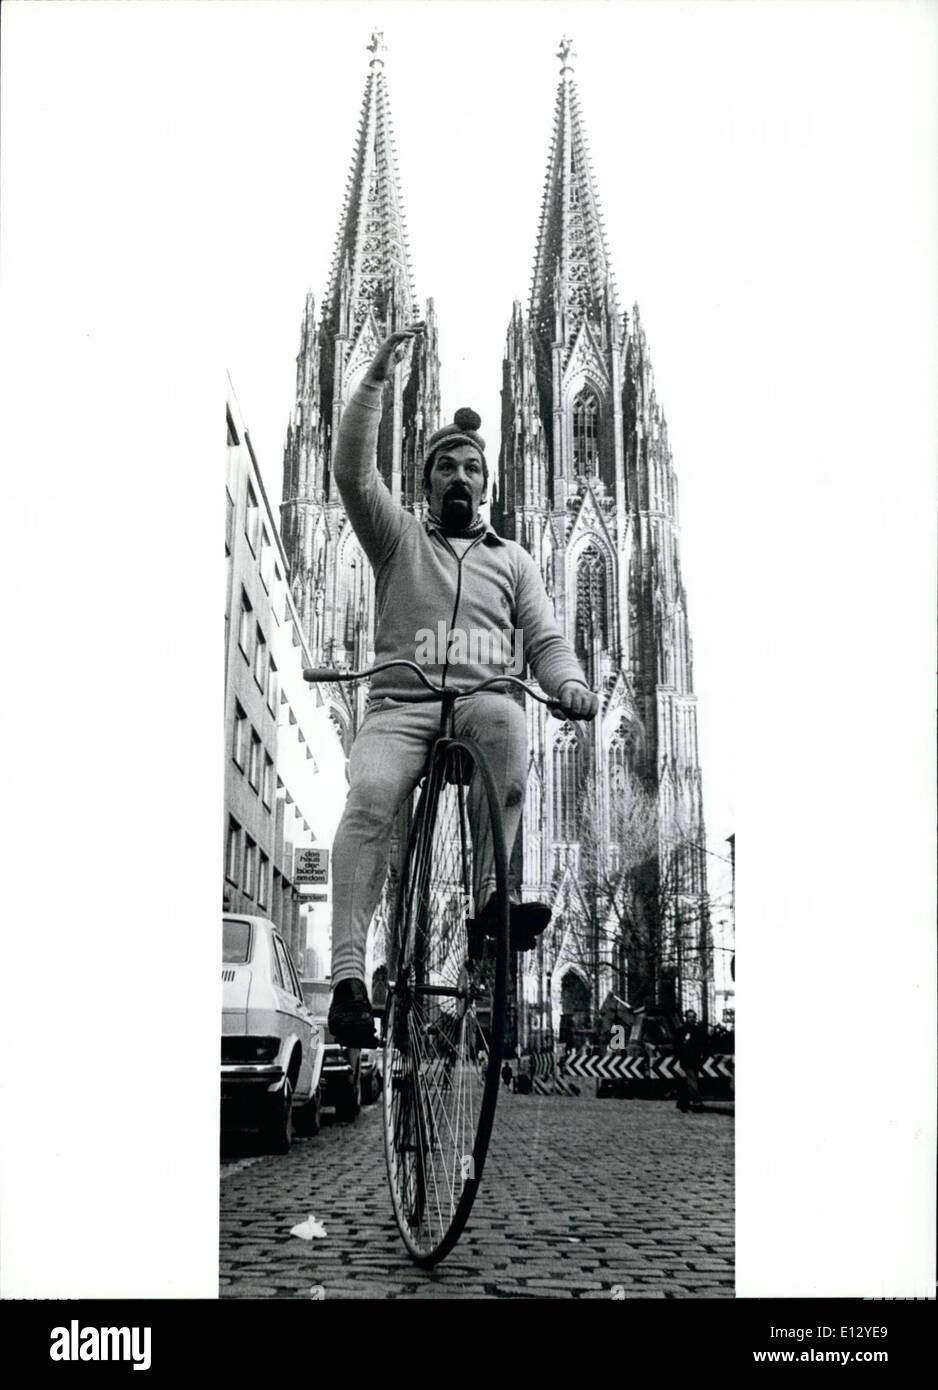 26. Februar 2012 - von BERLIN nach PARIS mit dem Fahrrad. Auf einer Tour von Berlin nach Paris auf eine altmodische Fahrrad (unser Bild entstand in Köln vor dem Start) ist die 32 Jahre alte Clemens Muter aus Köln. Mit dieser Reise imitiert er die berühmten Berlin Cabby '' Eiserne Gustav'' (Eisen Gustav), die gleichzeitig die gleiche Tour mit einer Pferdekutsche gemacht. Dies ist nicht die erste ursprüngliche Verpflichtung des Bewohners Köln, zeigen seine '' Titel '': Weltmeister der Schalentiere Essen, Quacksalber-Europameister und deutscher Meister der gekochten Kartoffeln essen. Stockfoto